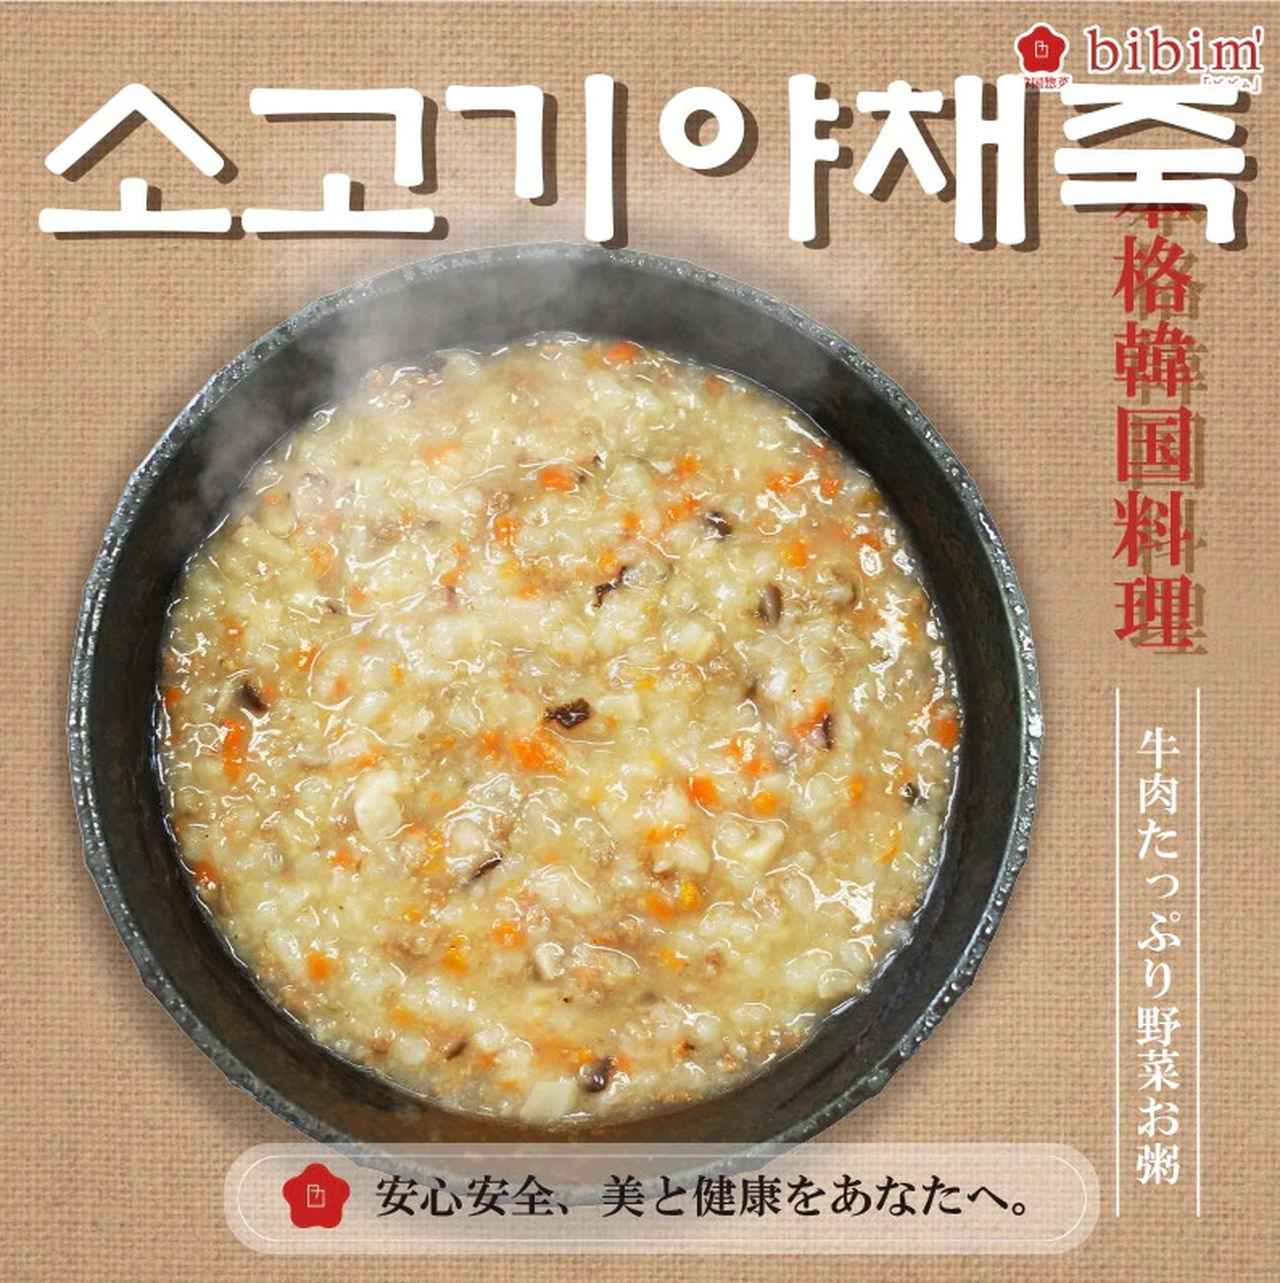 画像: 出典：韓国惣菜bibim' Qoo10店